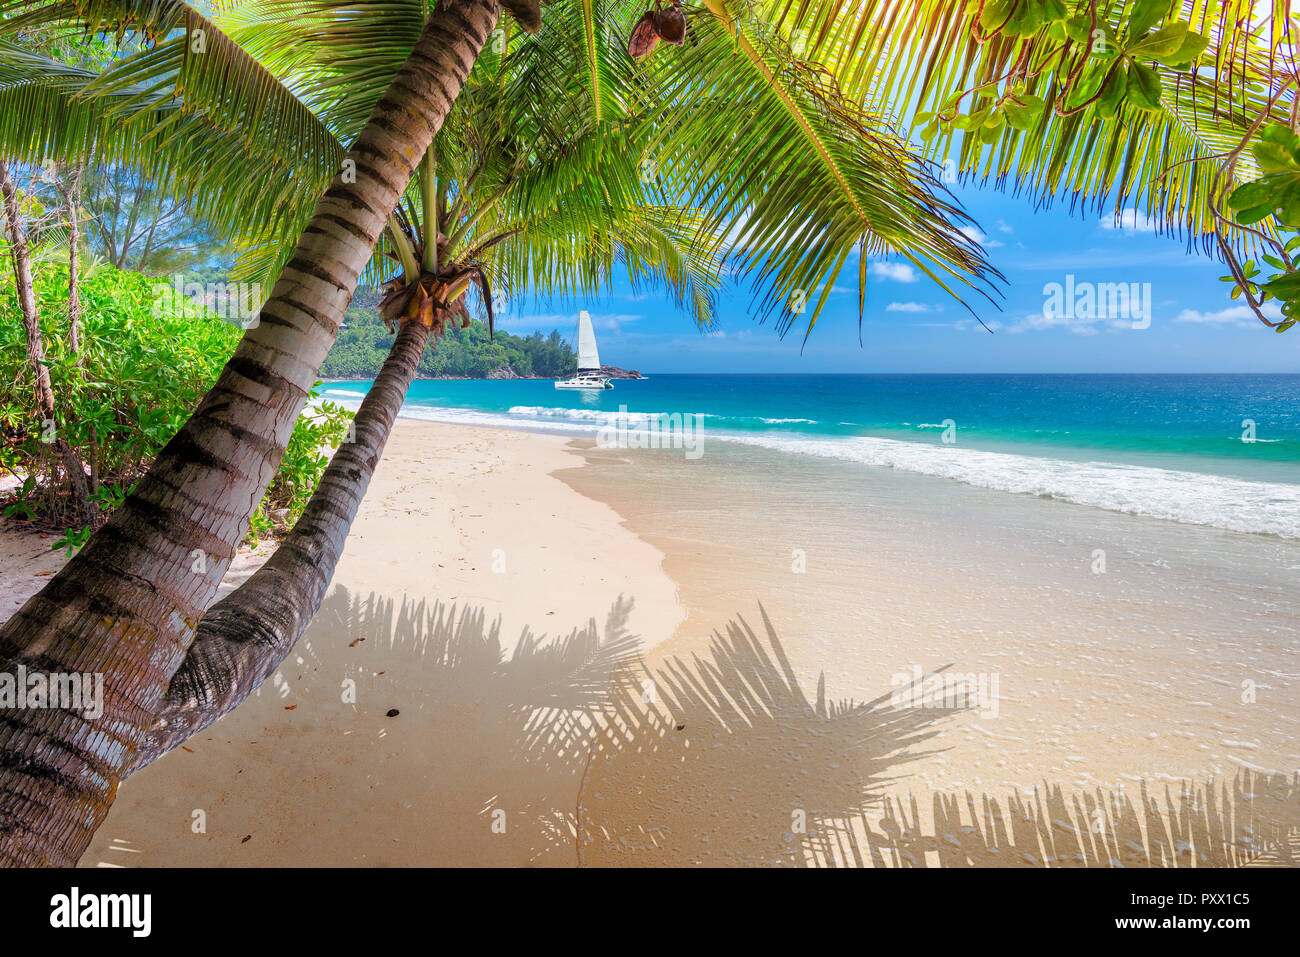 Playa de arena con palmeras y un bote de vela en el mar, en la isla de Jamaica. Foto de stock